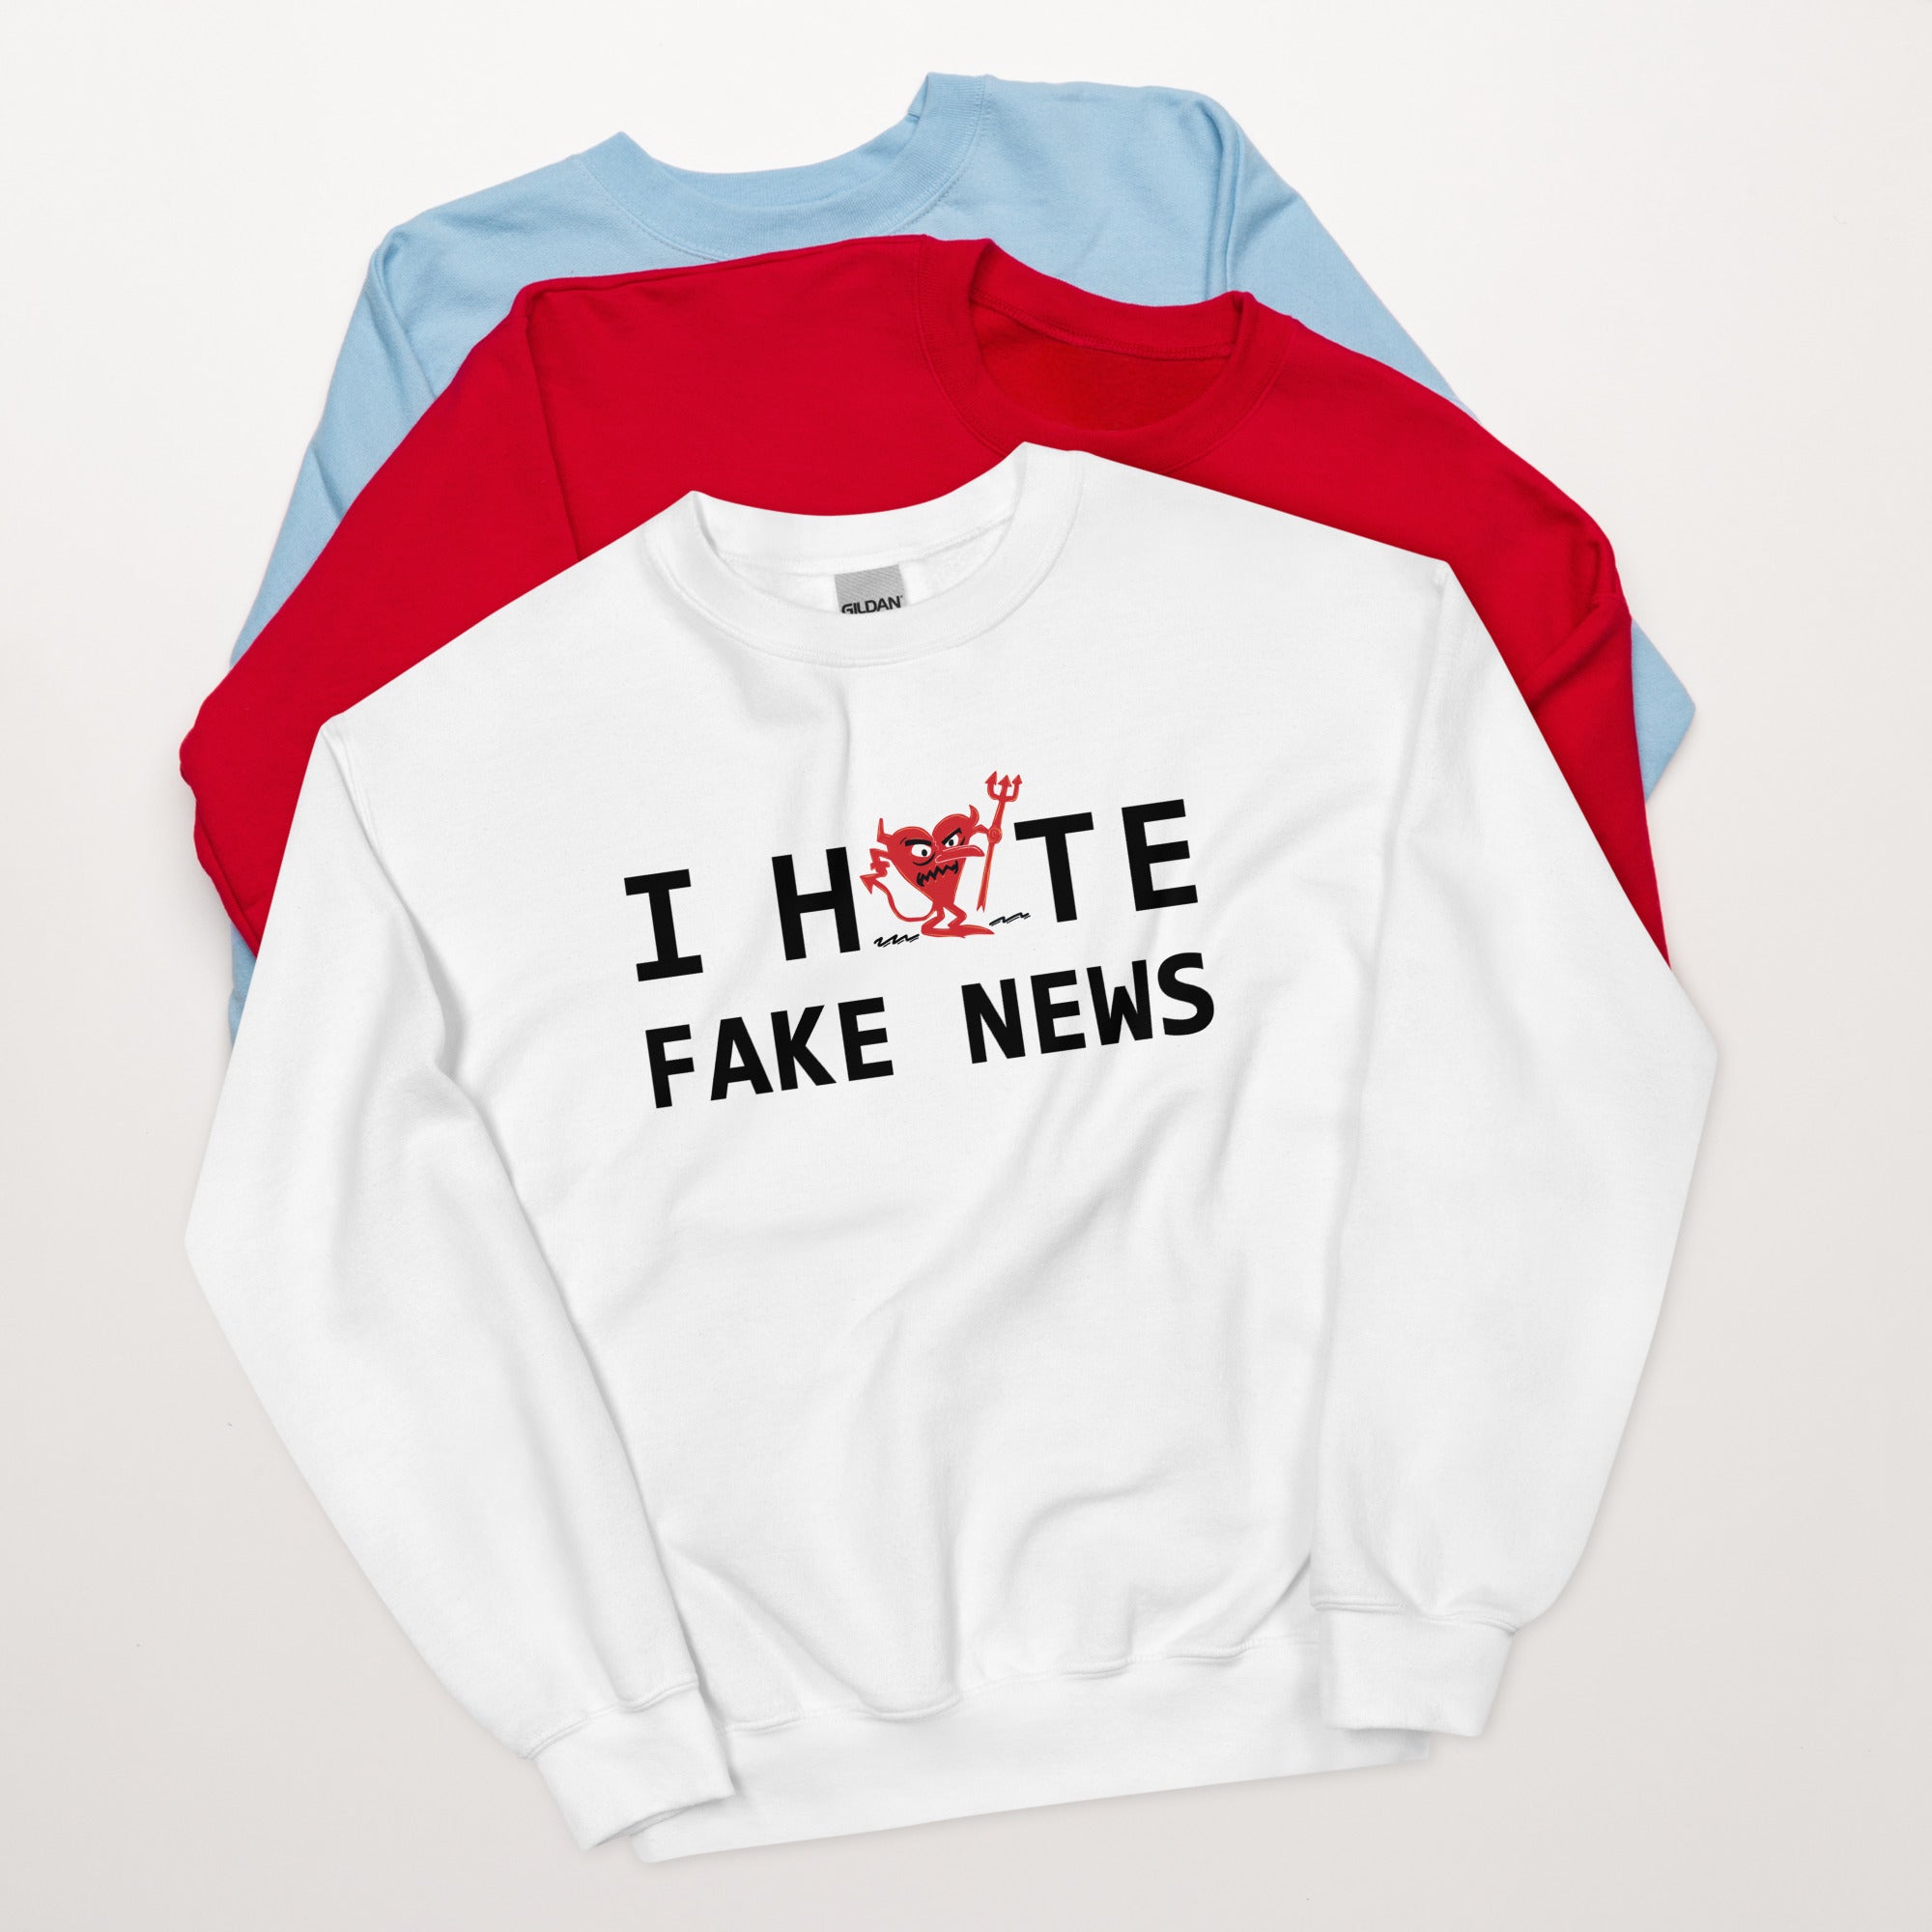 I Hate Fake News Unisex Sweatshirt